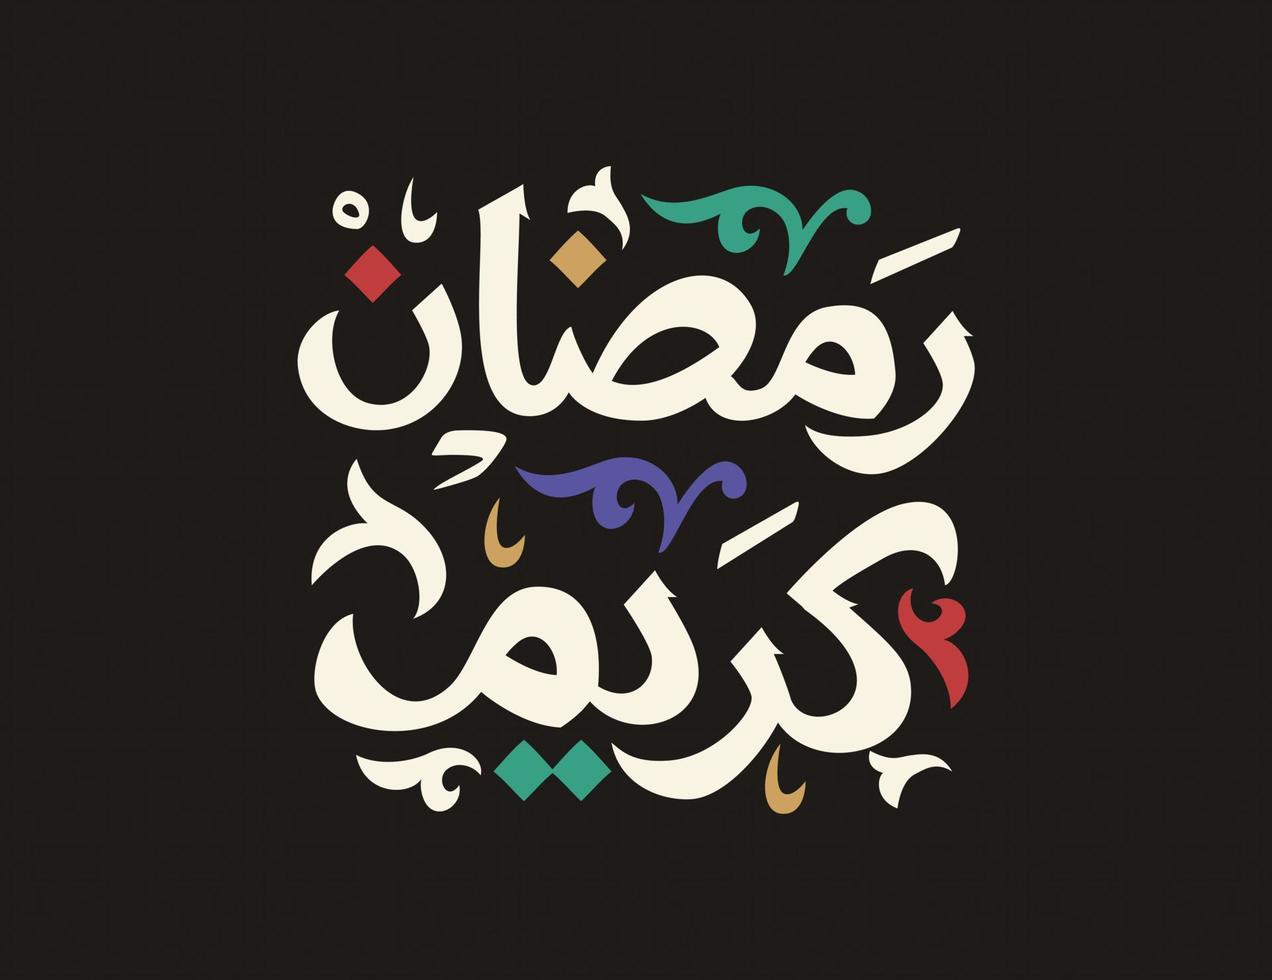 ramadan kareem mubarak islamische grußkarte im arabischen kalligraphievektor. ramadan kareem vektortypografie. ramadan-feiertagsvektorillustration. Ramadan-Kalligraphie in der islamischen Kunst. vektor